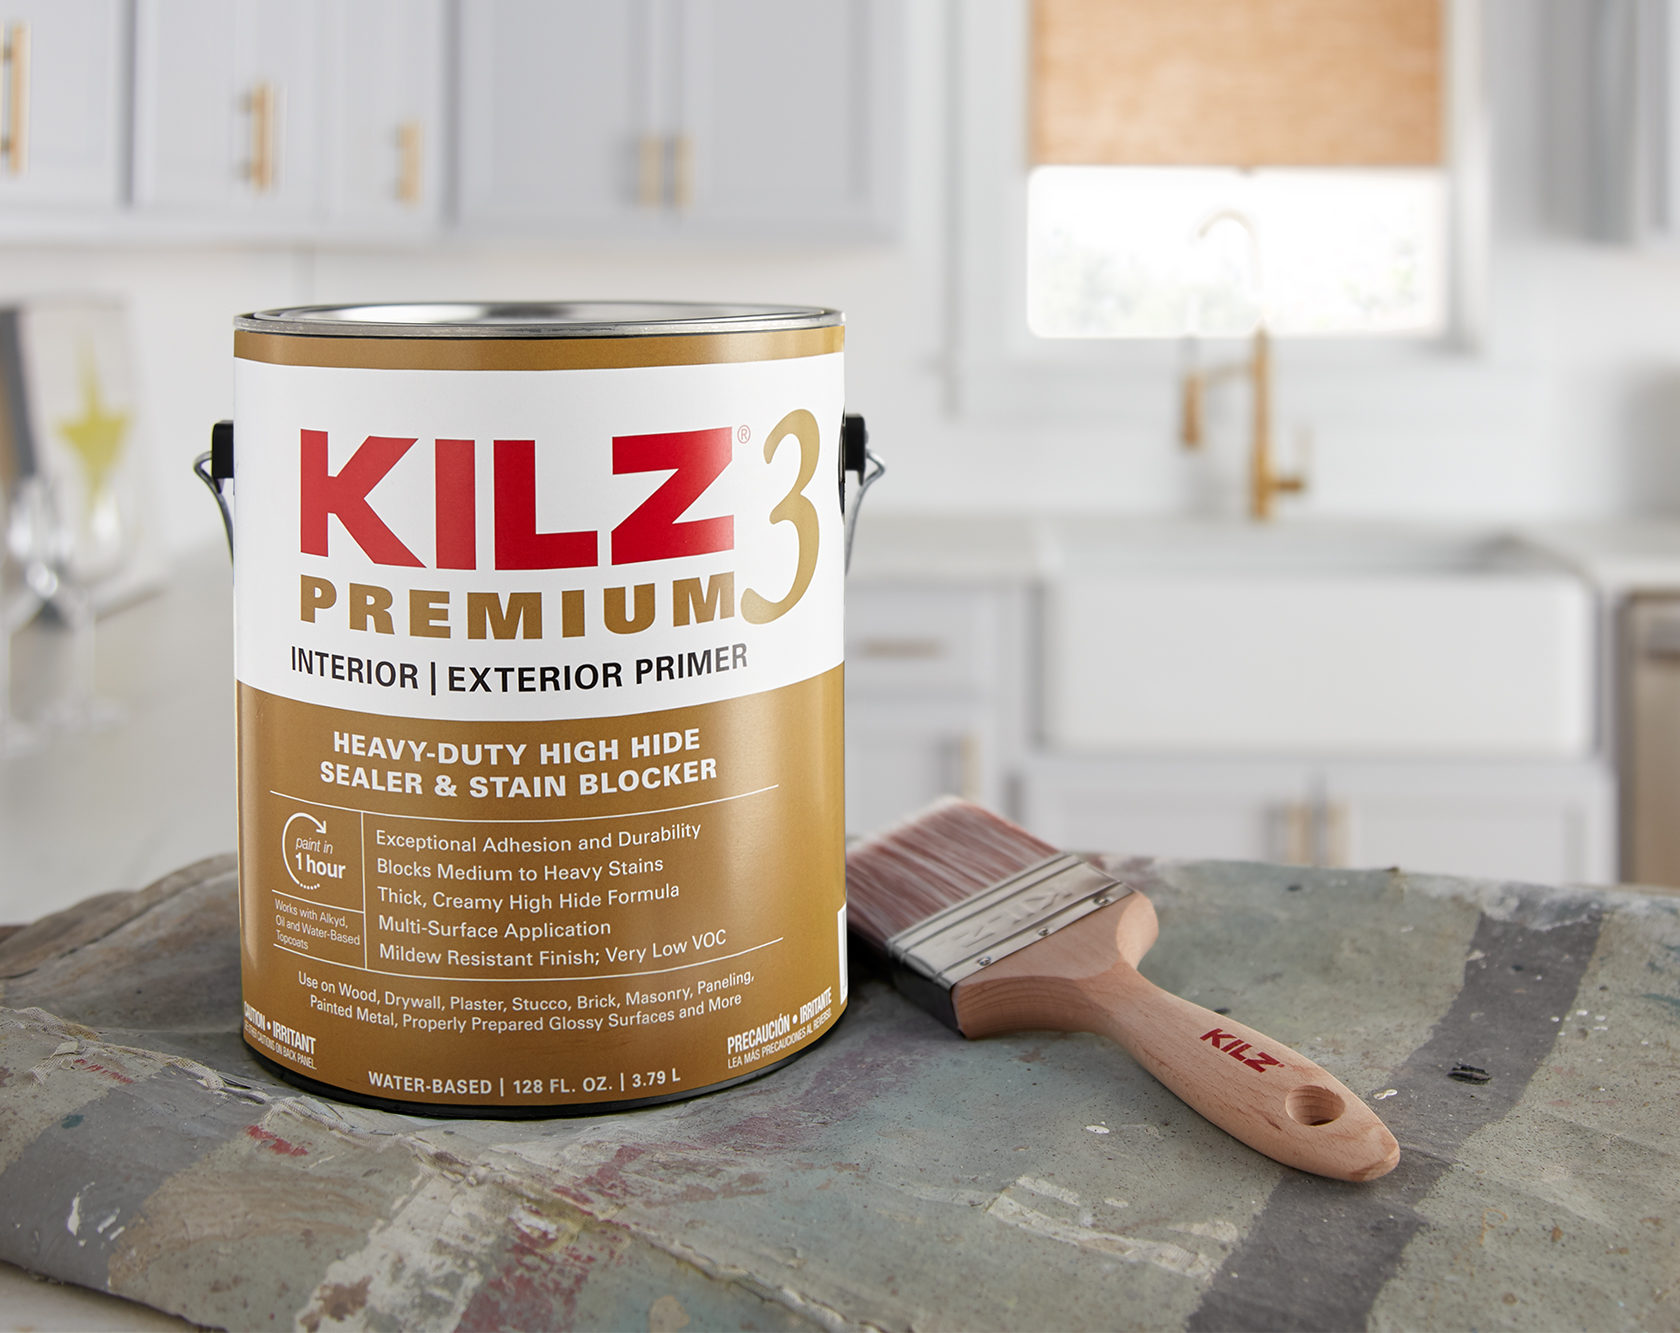 KILZ 3 Premium Interior & Exterior Primer 1 gallon can in a kitchen scene